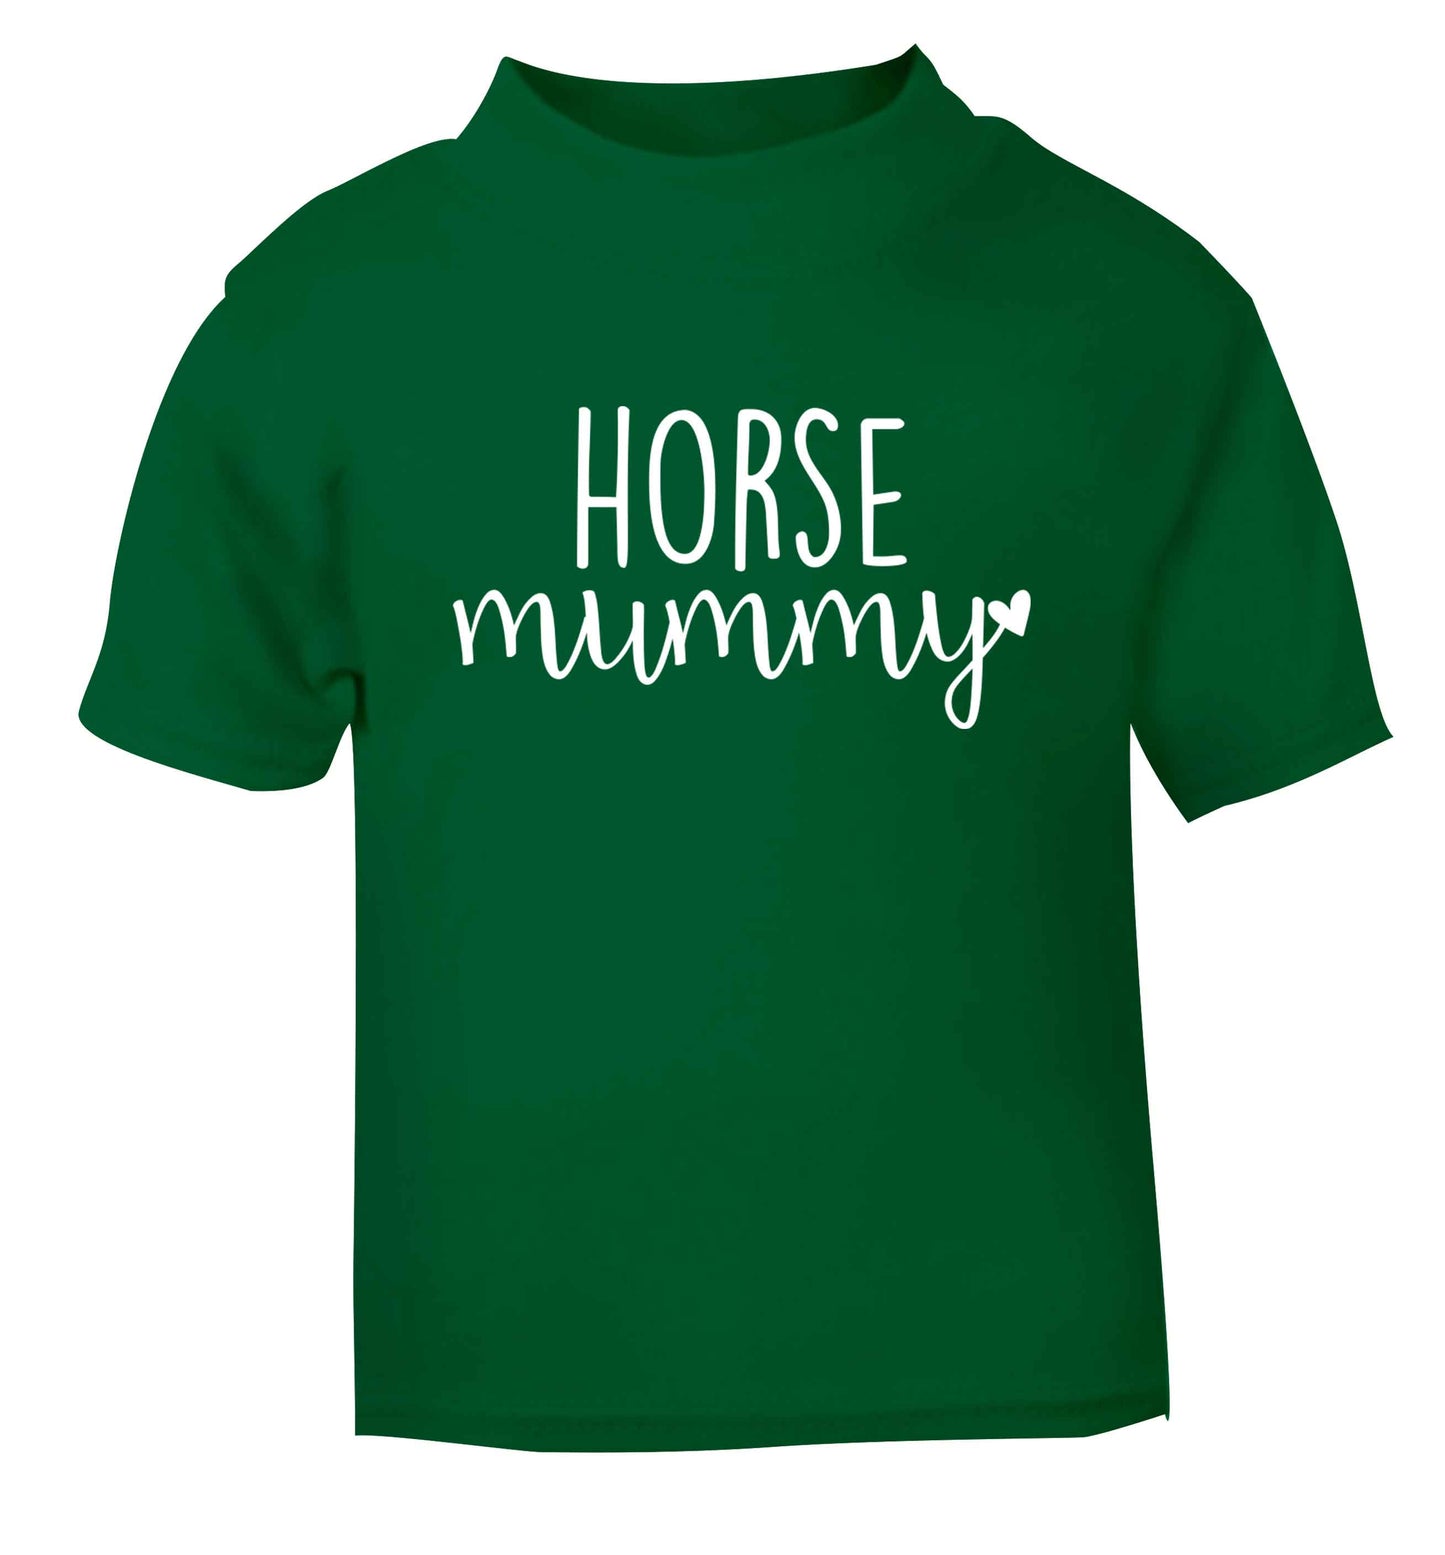 Horse mummy green baby toddler Tshirt 2 Years